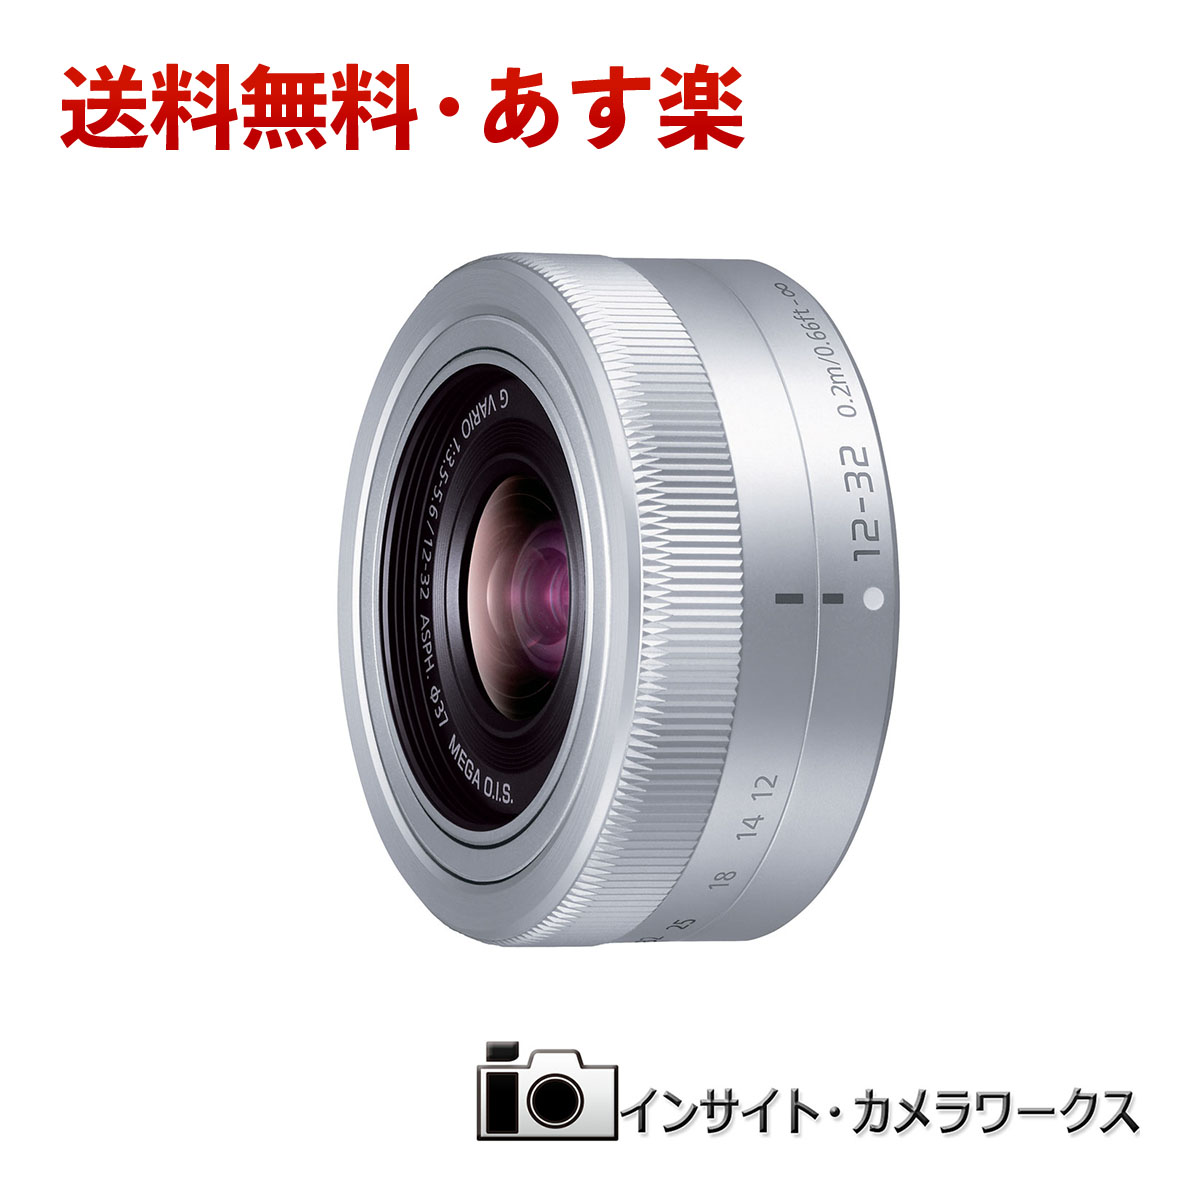 あす楽対応 送料無料 特価 Panasonic LUMIX G VARIO 12-32mm F3.5-5.6 ASPH. ルミックス 大人気! レンズ パナソニック H-FS12032-S 交換レンズ シルバー MEGA 標準ズームレンズ 最大60％オフ O.I.S. 標準